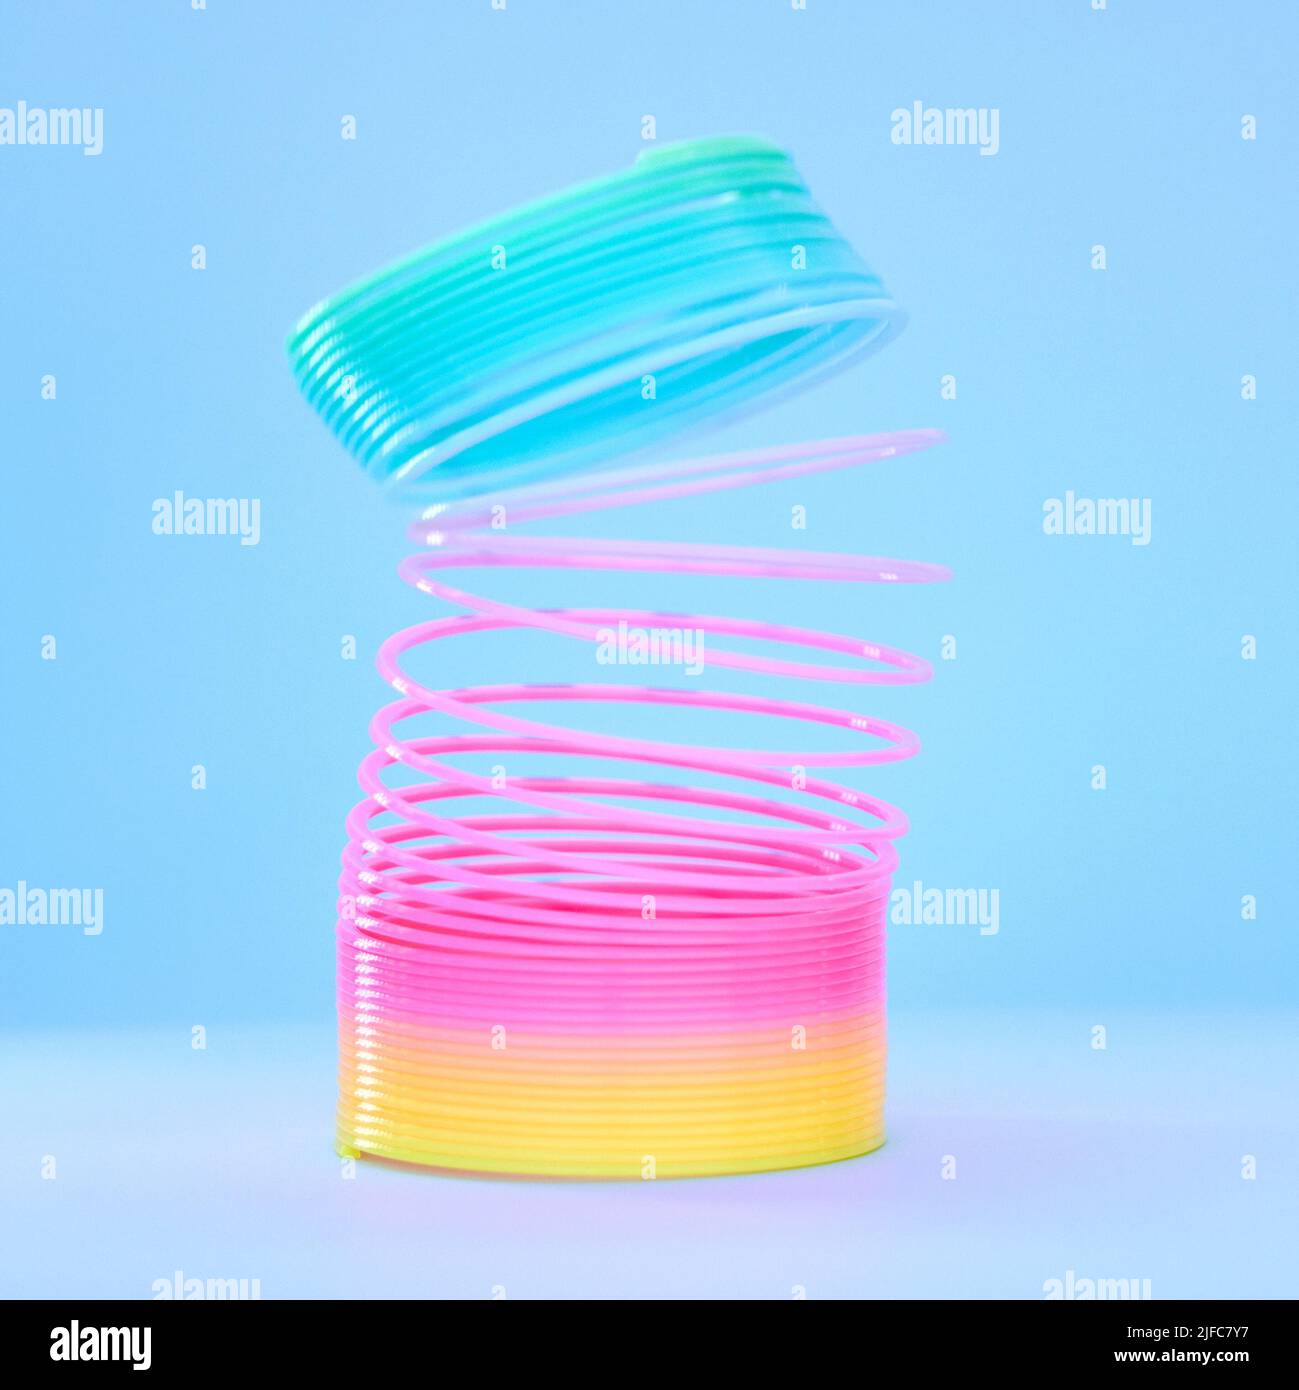 Primo piano di un colorato giocattolo flessibile in plastica arcobaleno slinky in movimento teso isolato su uno sfondo blu. Colori divertenti per l'infanzia Foto Stock